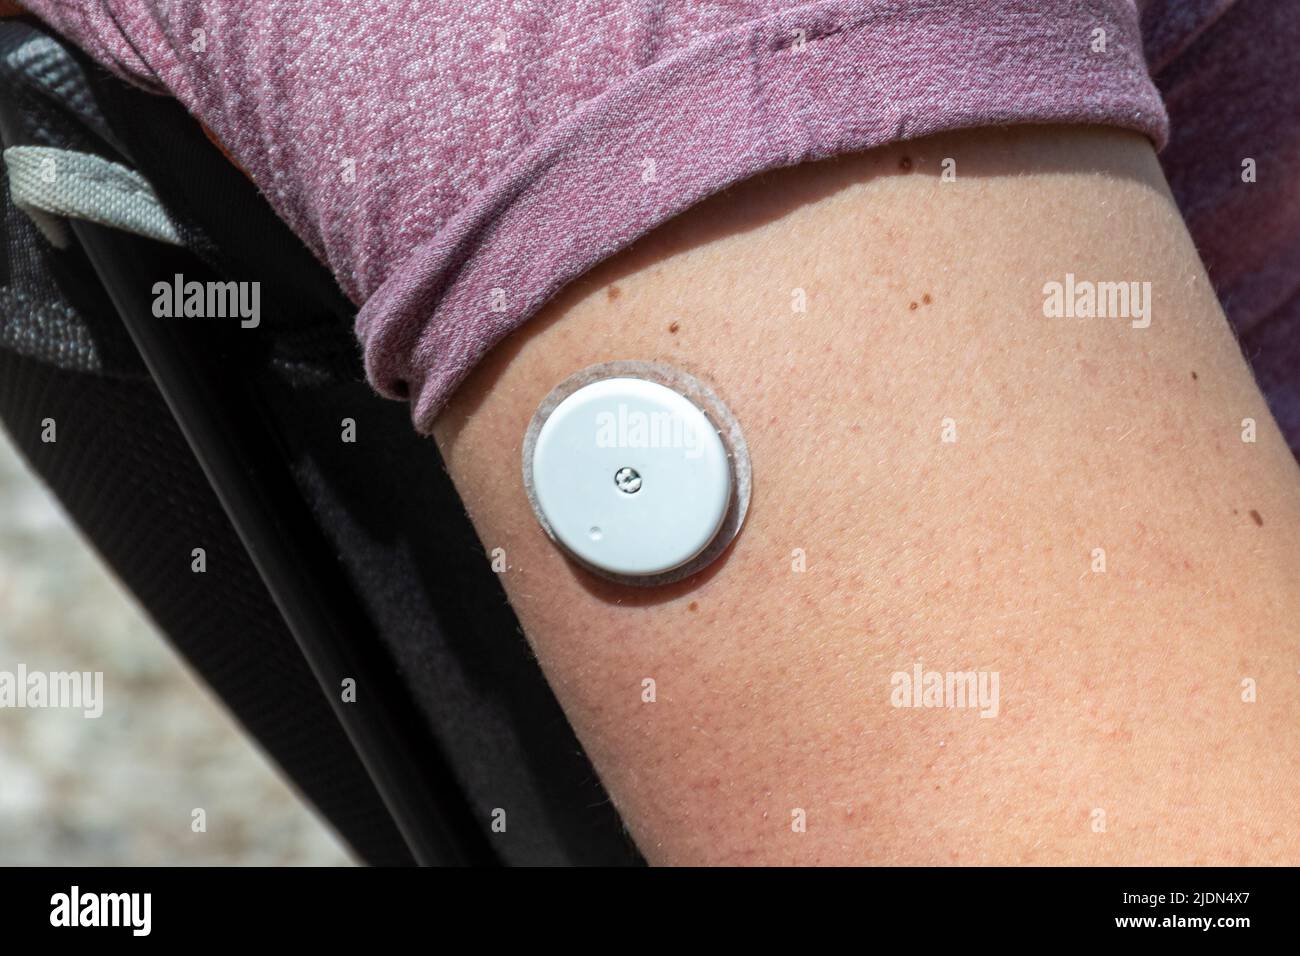 Hombre diabético joven que usa un sensor para un monitor de glucosa para verificar los niveles de azúcar en la sangre sin necesidad de un pinchazo de dedo, tratamiento moderno para la diabetes Foto de stock